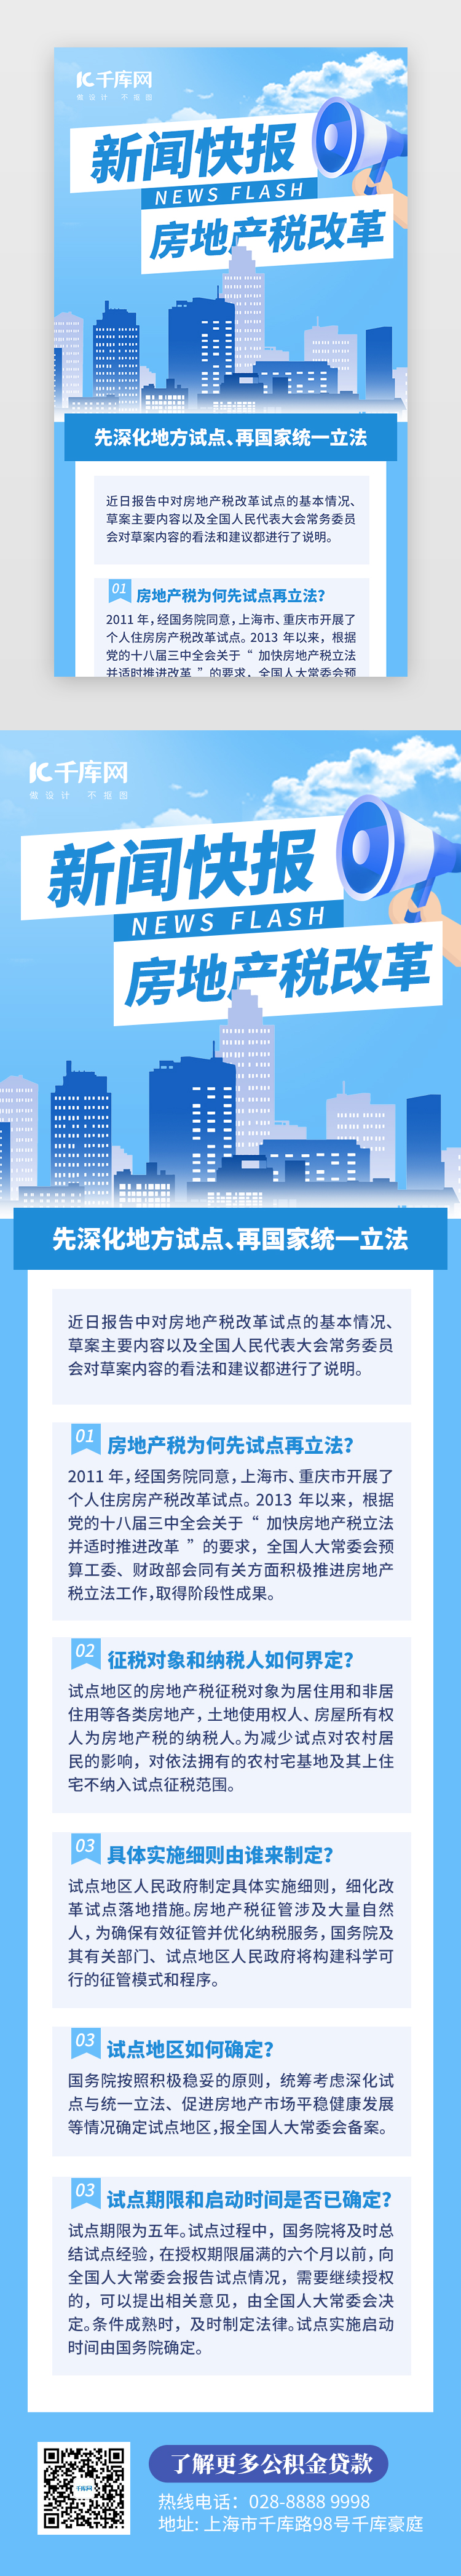 新闻快报房地产税改革H5创意蓝色建筑图片